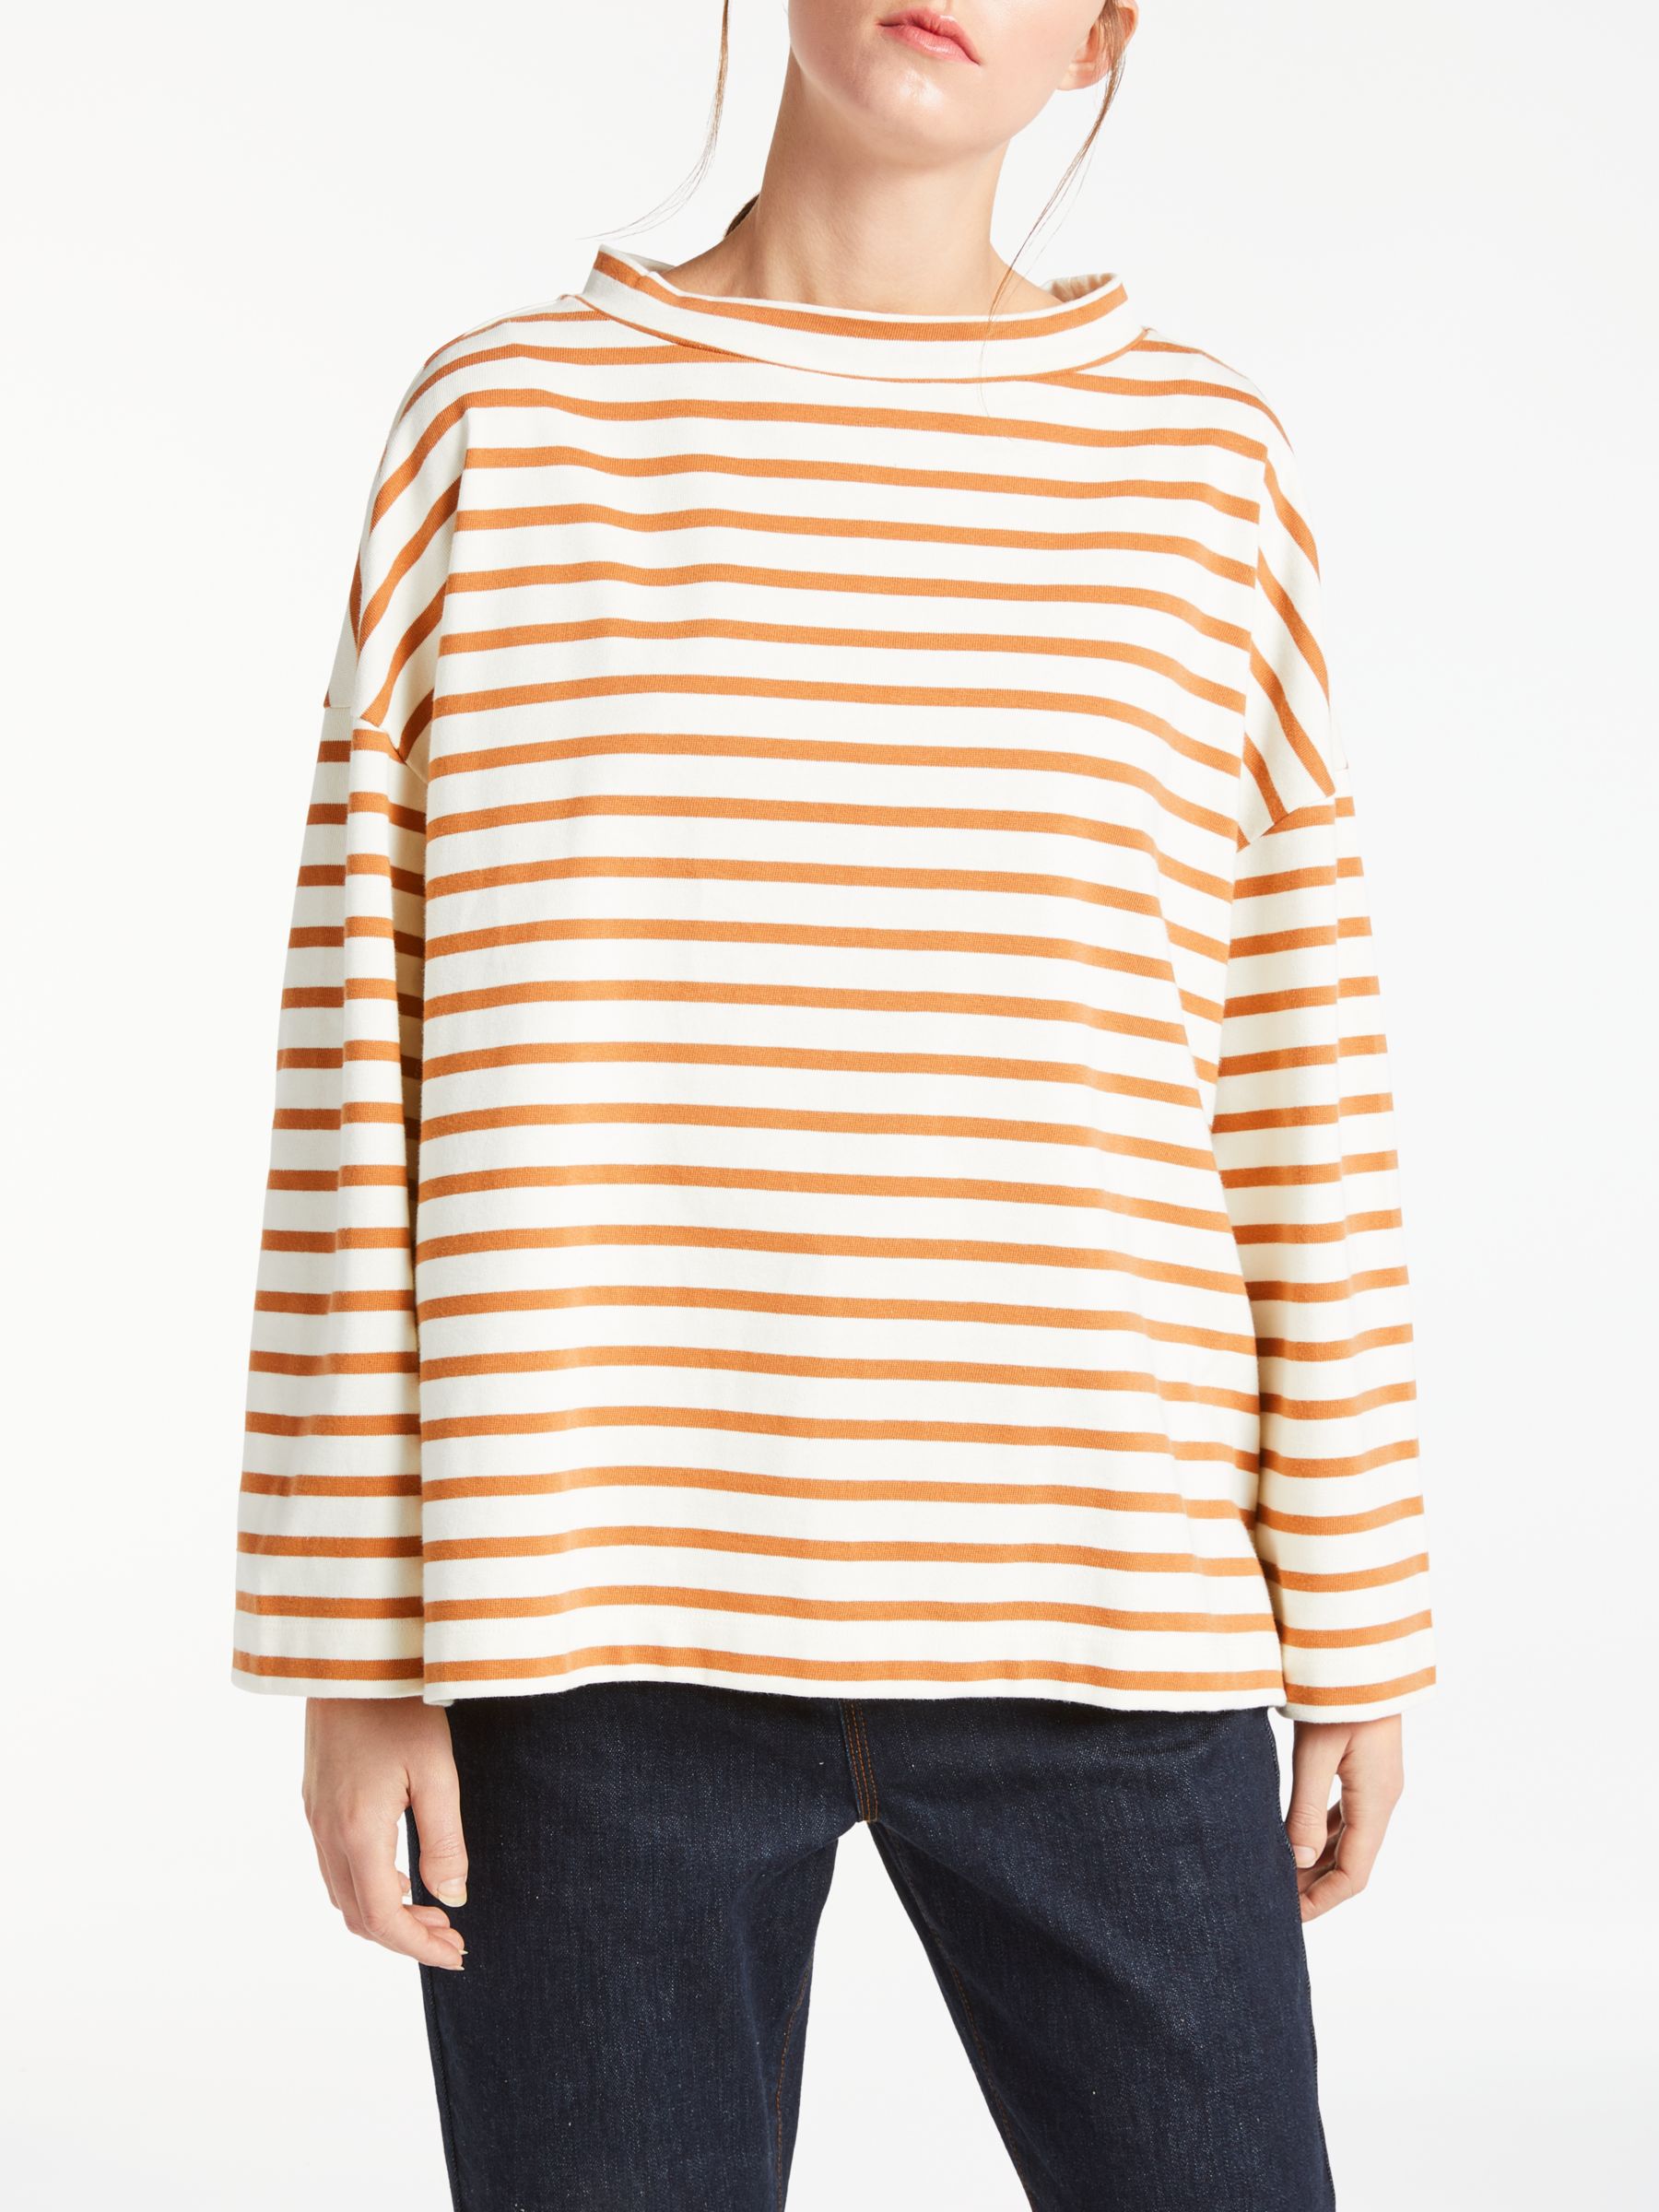 Kin Stripe Mock Neck T-Shirt, Brown/White, XL